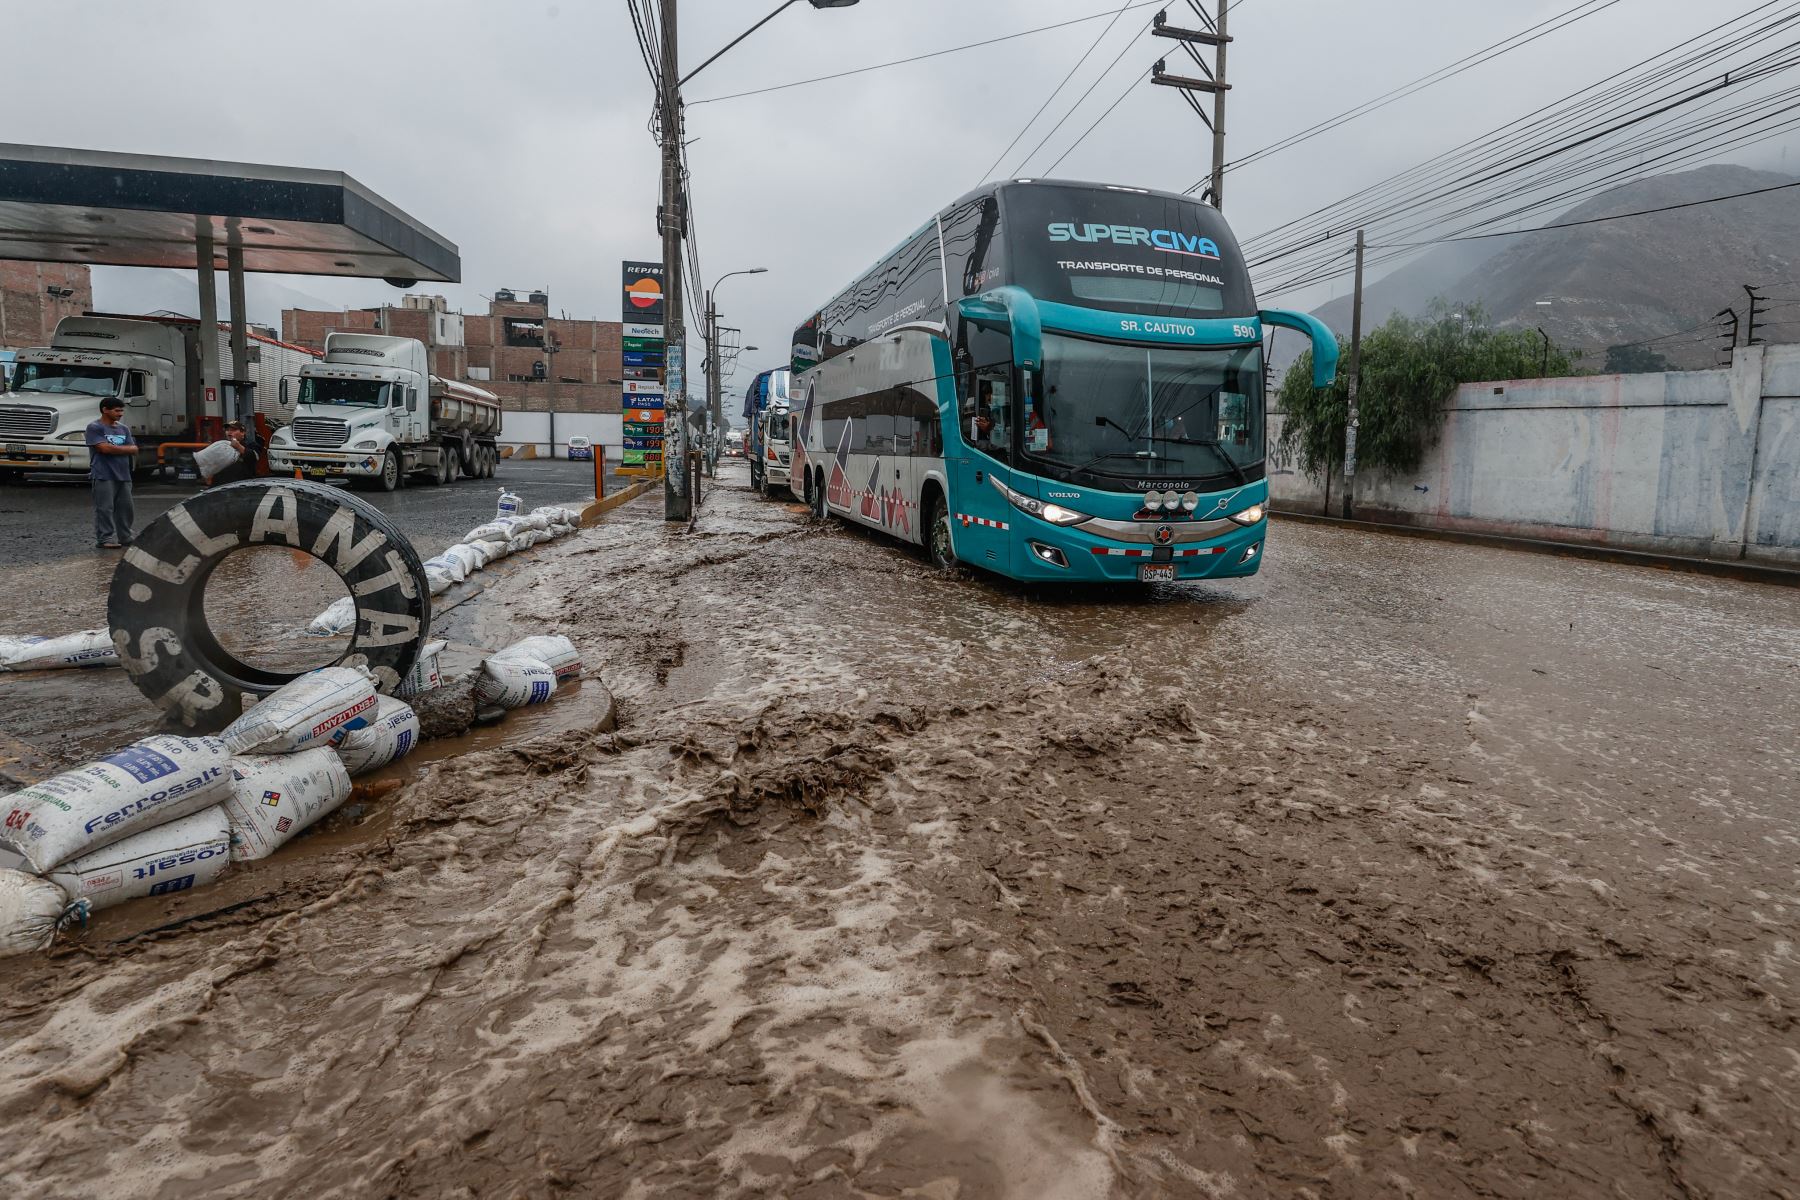 La Carretera Central luce esta tarde completamente inundada en el distrito de Chaclacayo, debido a la activación de la quebrada Los Laureles por las intensas lluvias que se registraron en las últimas horas.

Foto: ANDINA/Vidal Tarqui